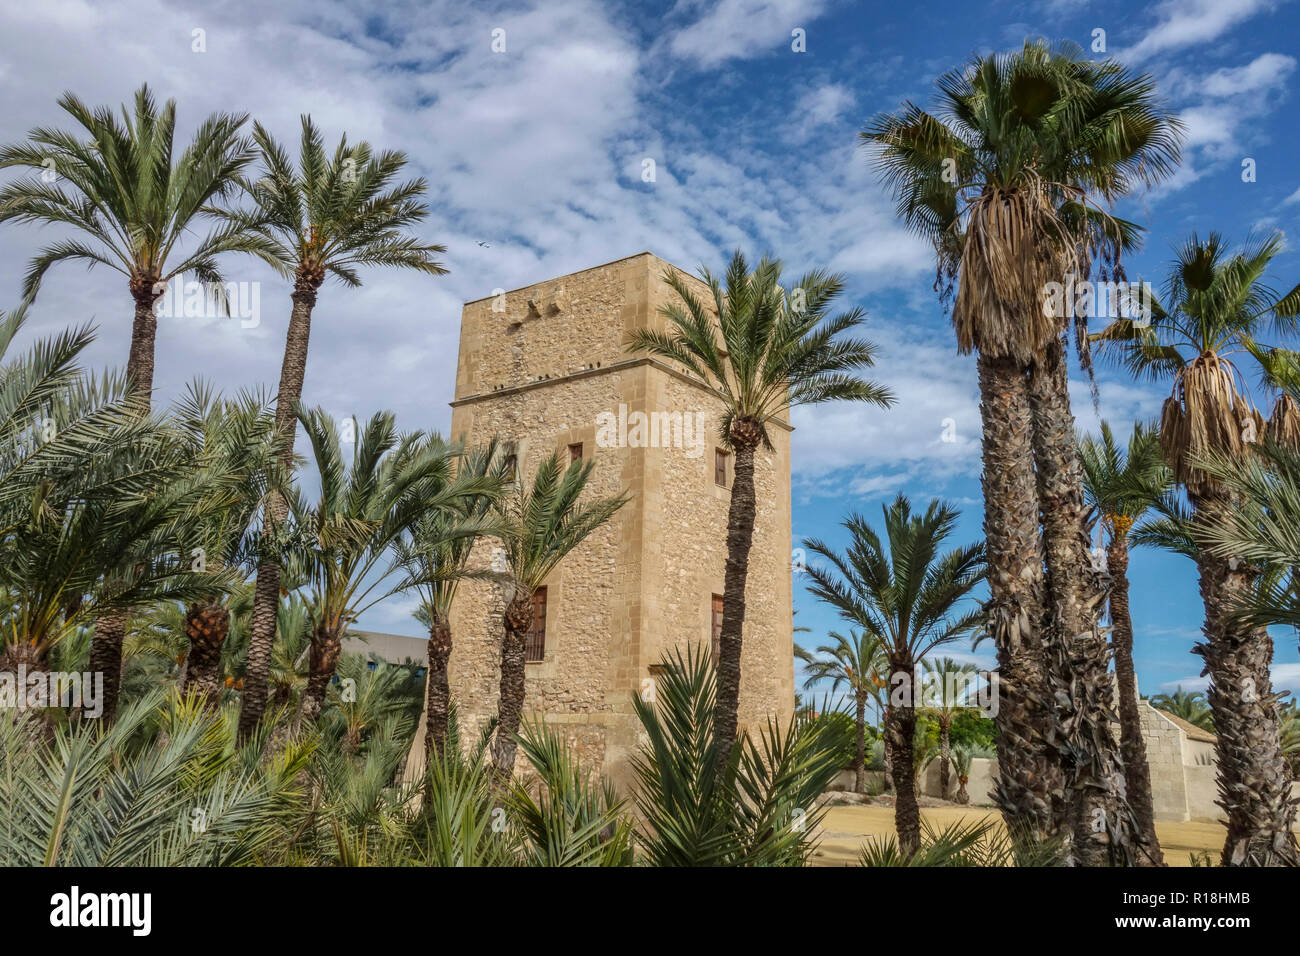 Spagna, Elche, Torre de Vaillo, palme patrimonio dell'umanità dell'UNESCO, famosa località turistica, giardino di palme con palme Foto Stock